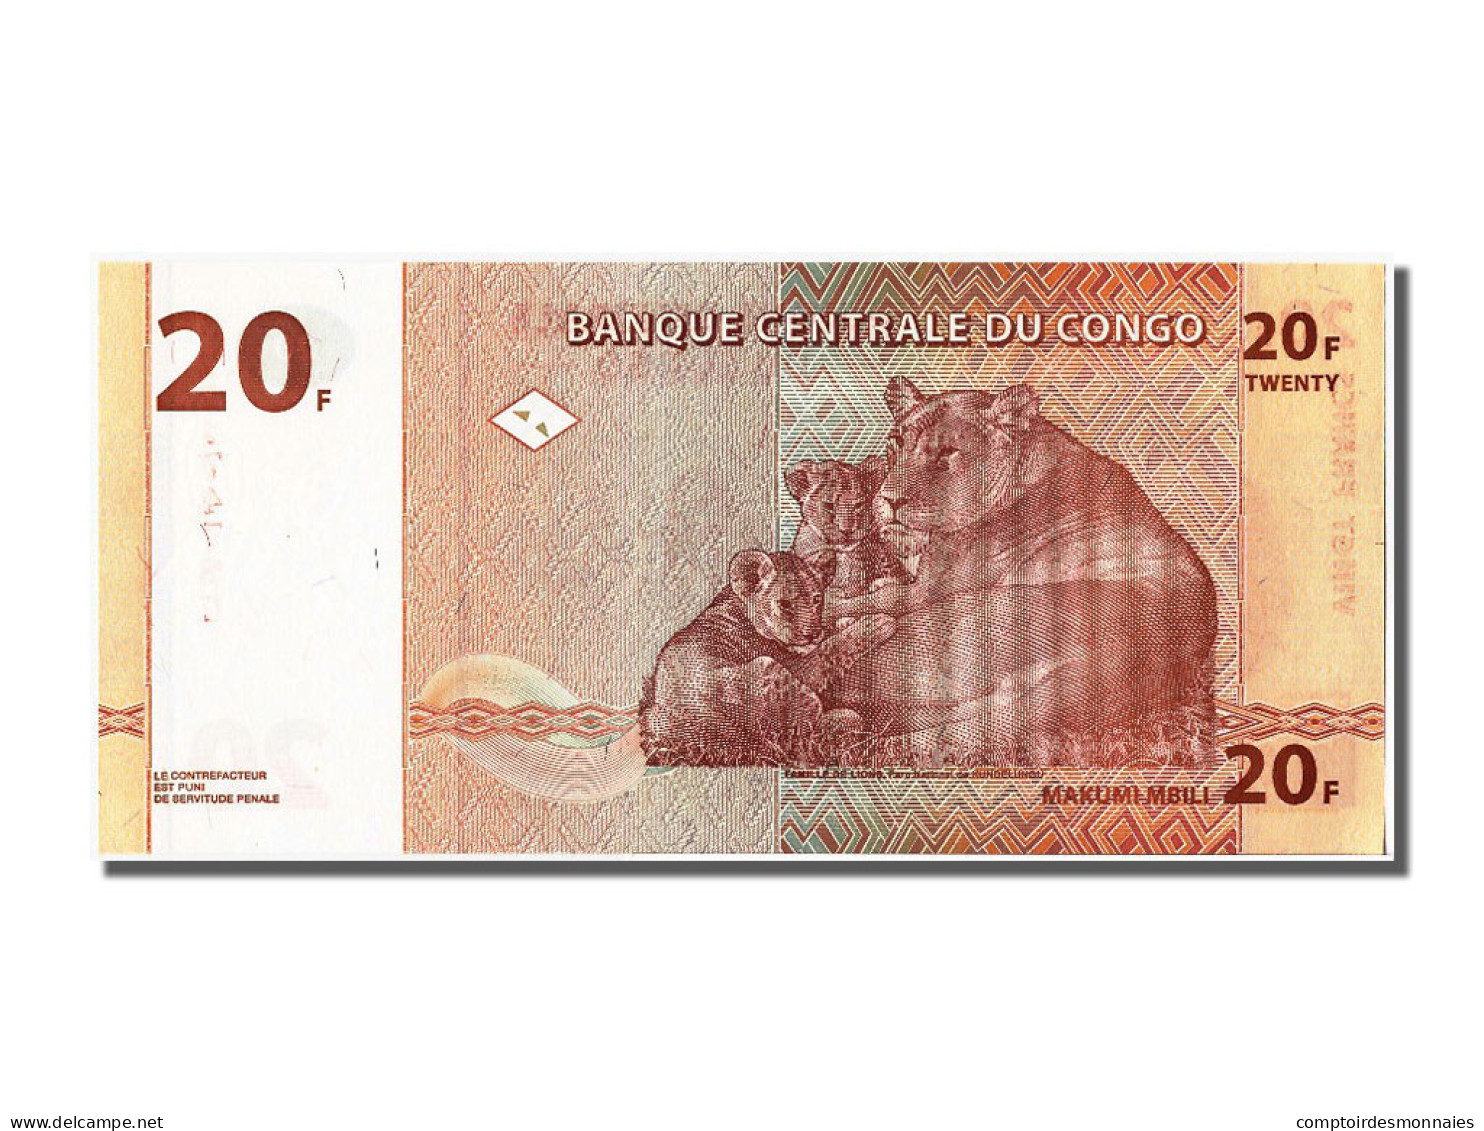 Billet, Congo Democratic Republic, 20 Francs, 1997, 1997-11-01, NEUF - Democratic Republic Of The Congo & Zaire